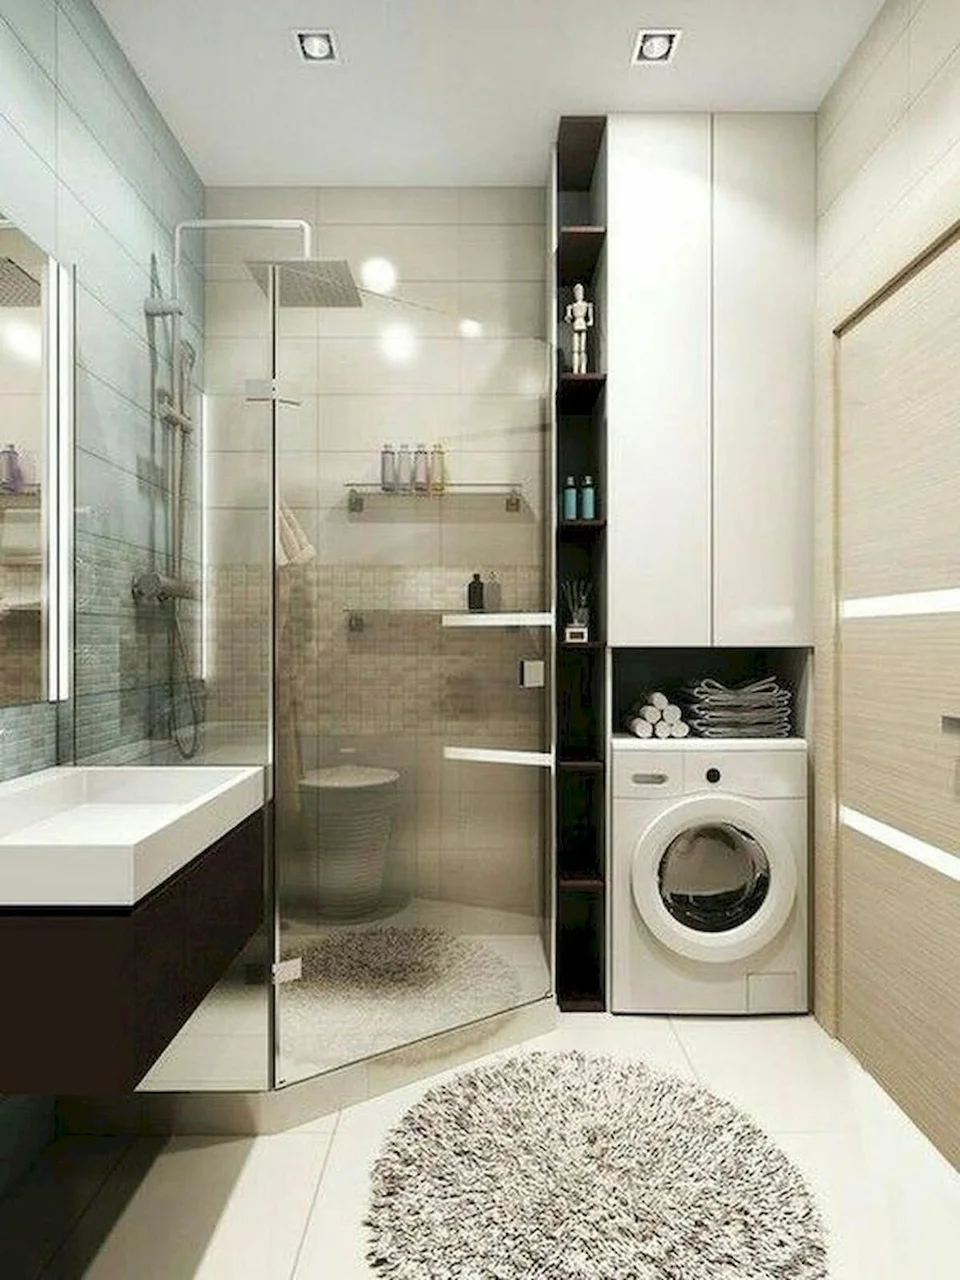 Дизайн ванной с душевой кабиной